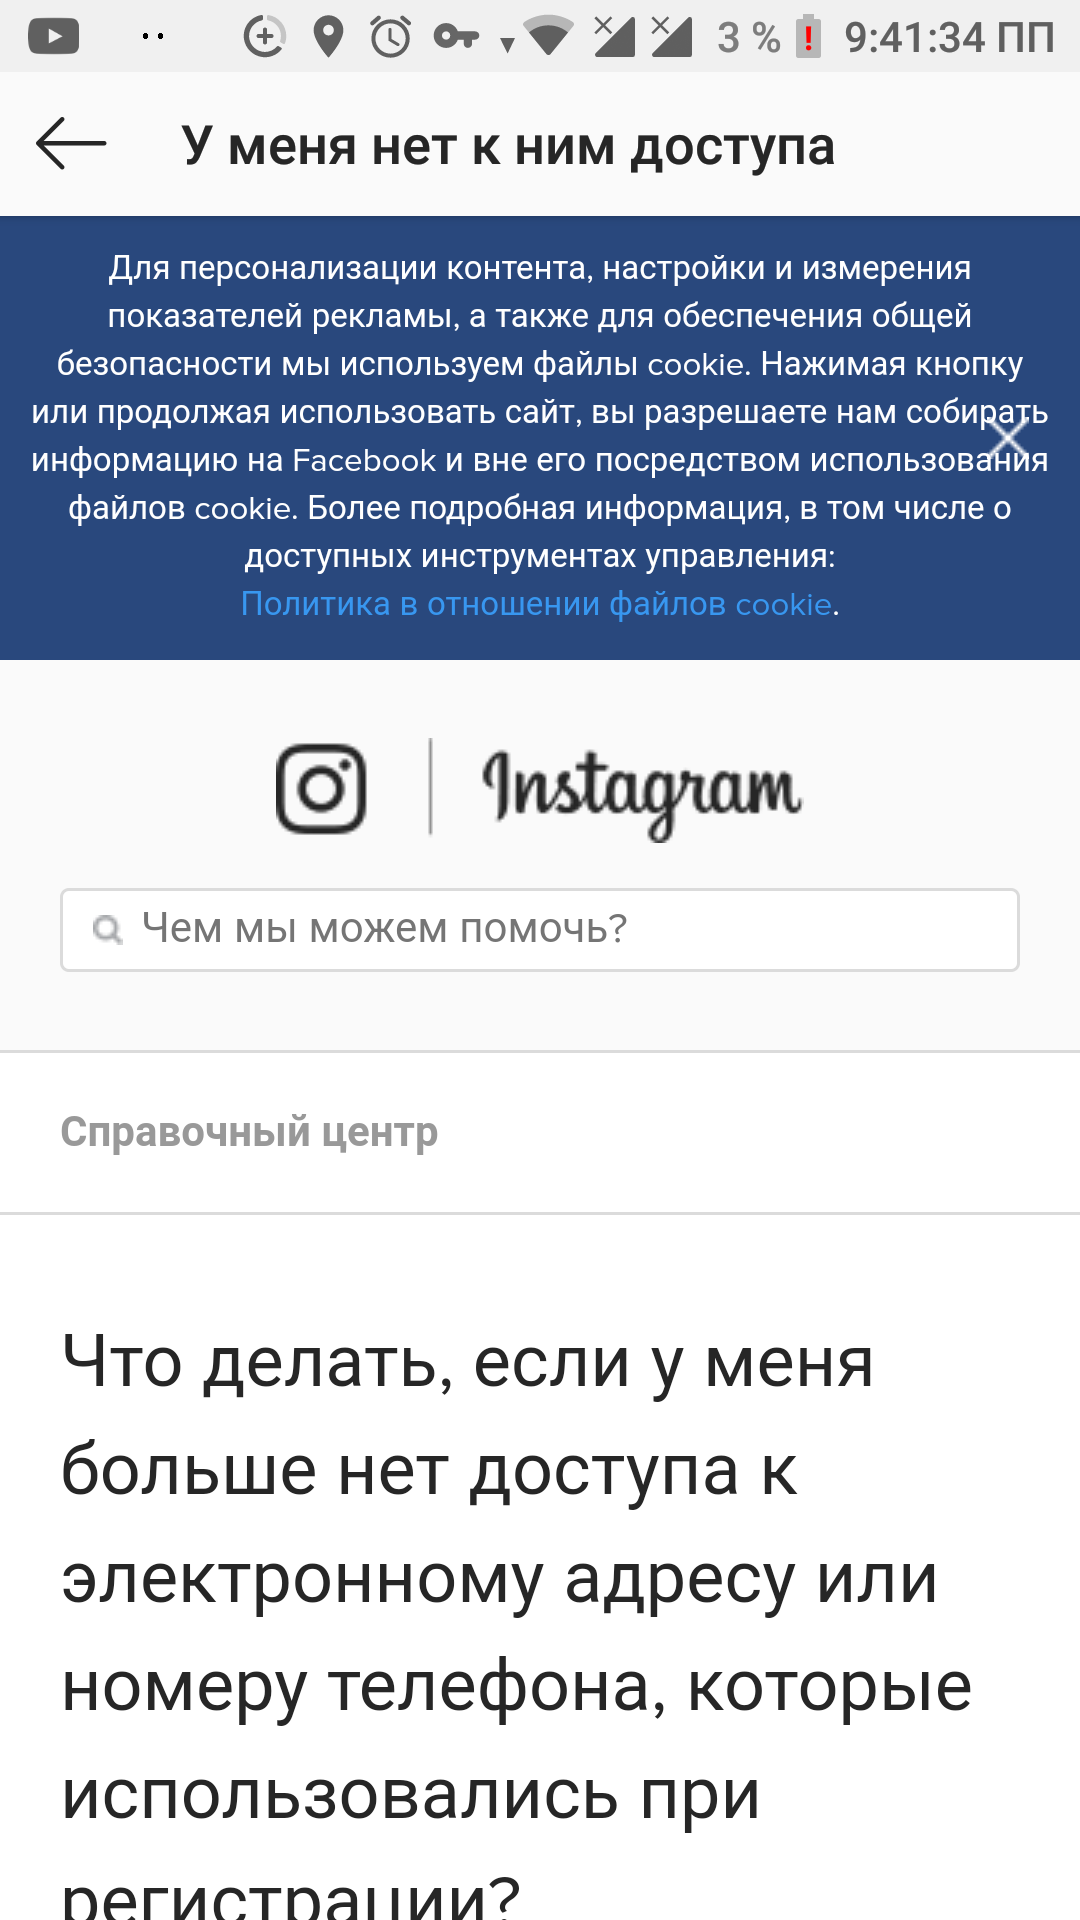 Как восстановить аккаунт в Instagram, если Вас взломали?, Taras, 3 ноя 2018, 15:08, ins2.png